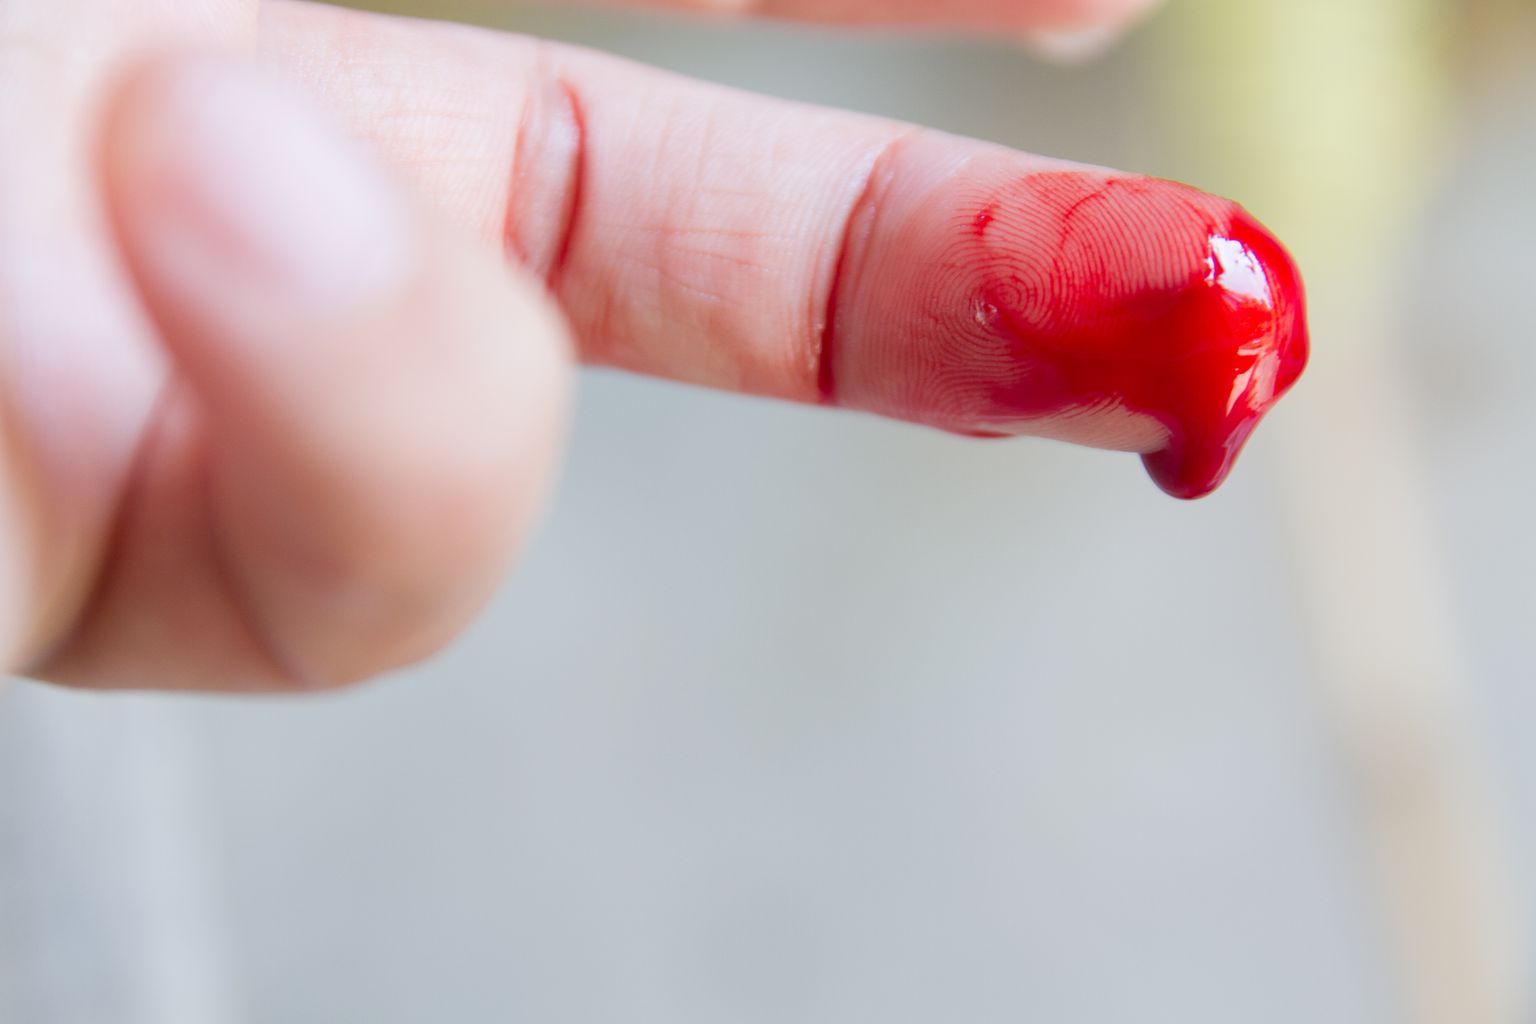 Verine sõrm. Pilt on illustreeriv